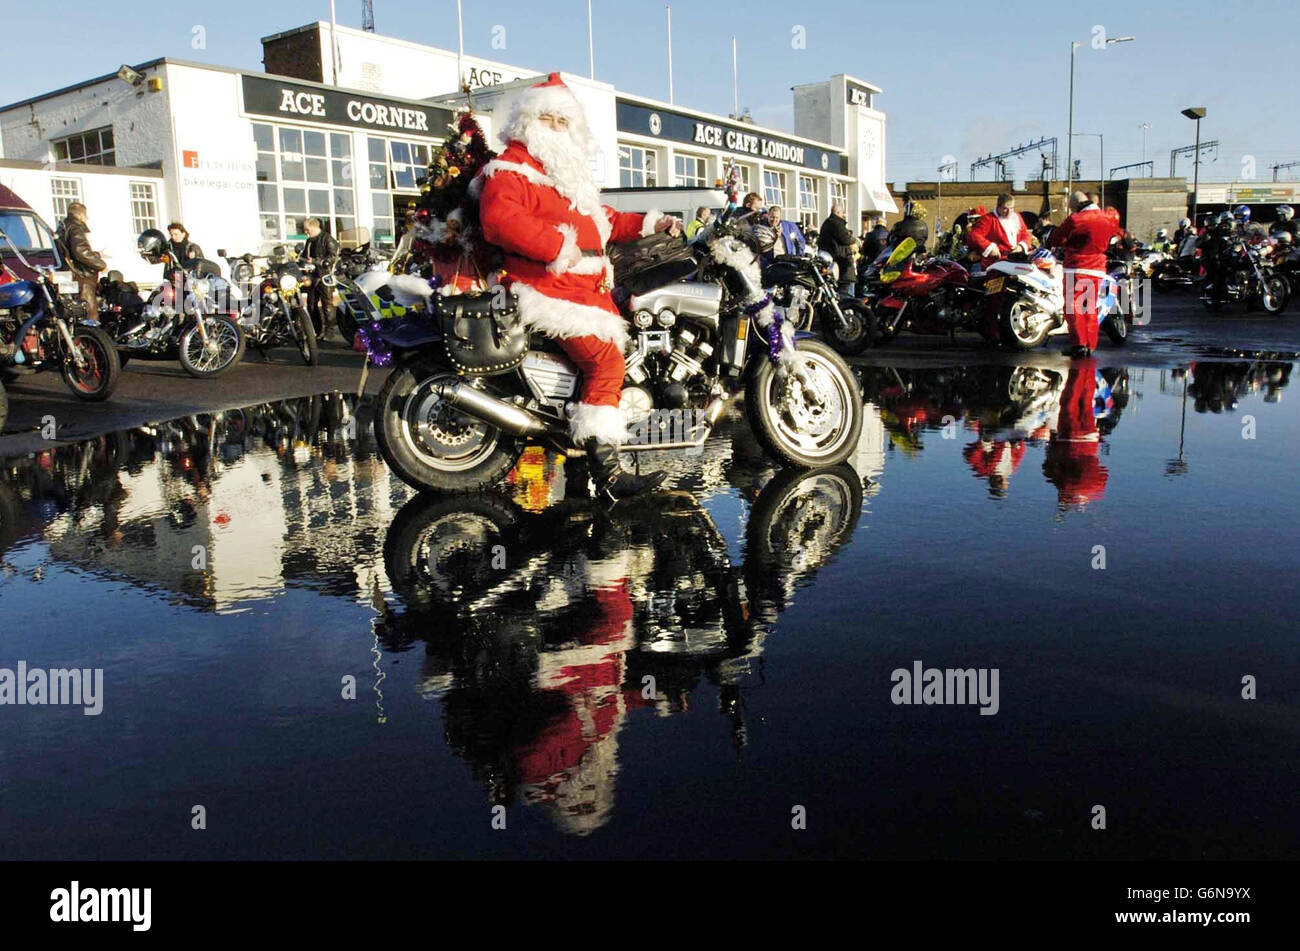 Ein Biker im Weihnachtsmann-Outfit begleitet über hundert Motorradfahrer im Ace Cafe, Brent, im Norden Londons, um Kindern Weihnachtsgeschenke im Central Middlesex Hospital, St. Mary's Hospital und St. Thomas' Hospital zu überreichen. Stockfoto